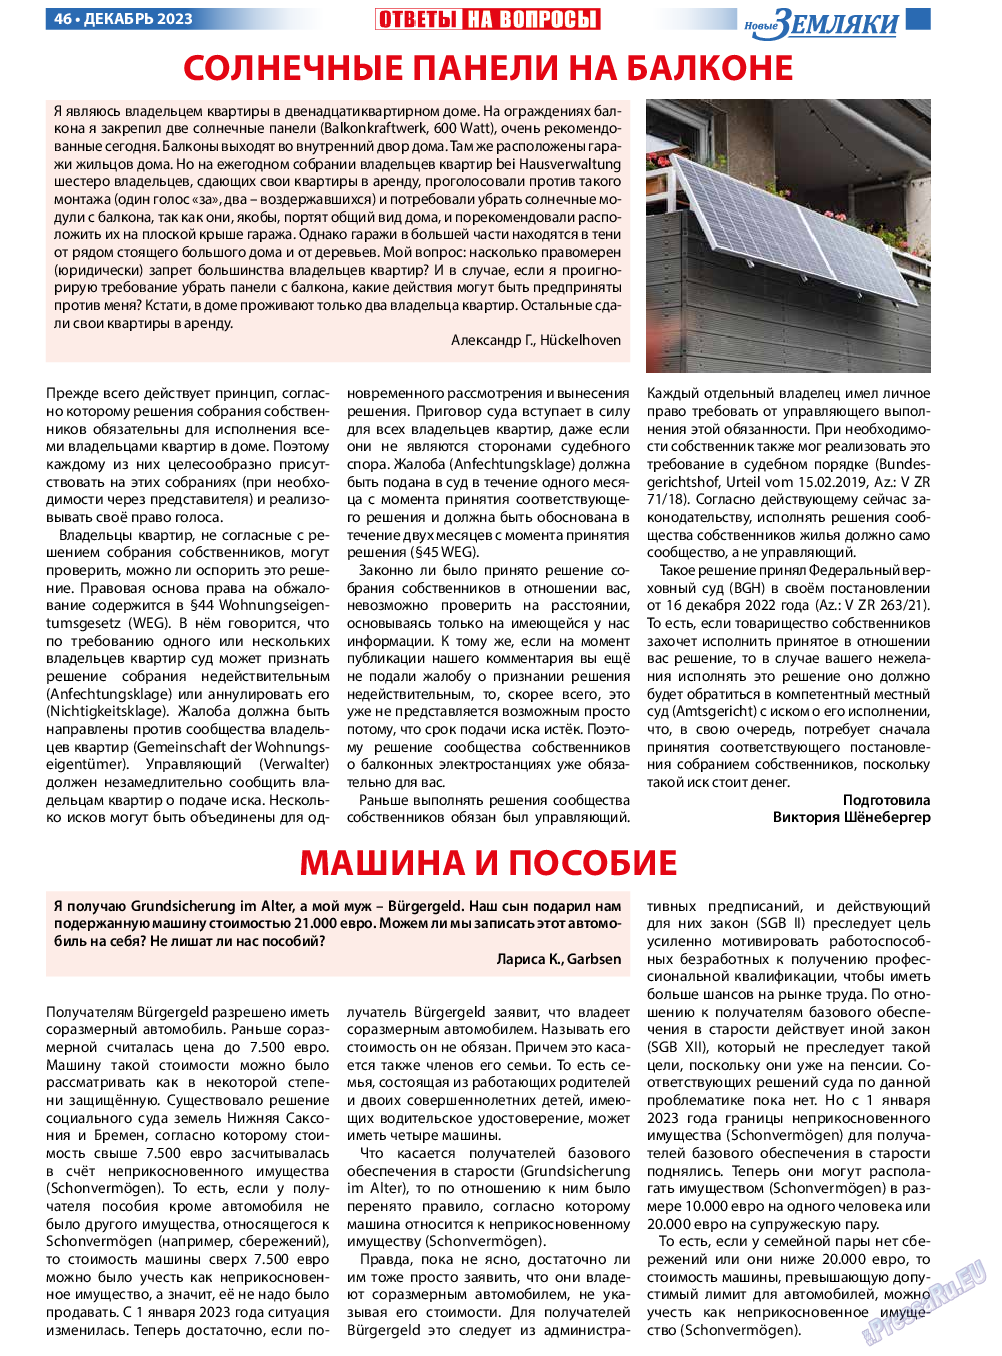 Новые Земляки, газета. 2023 №12 стр.46